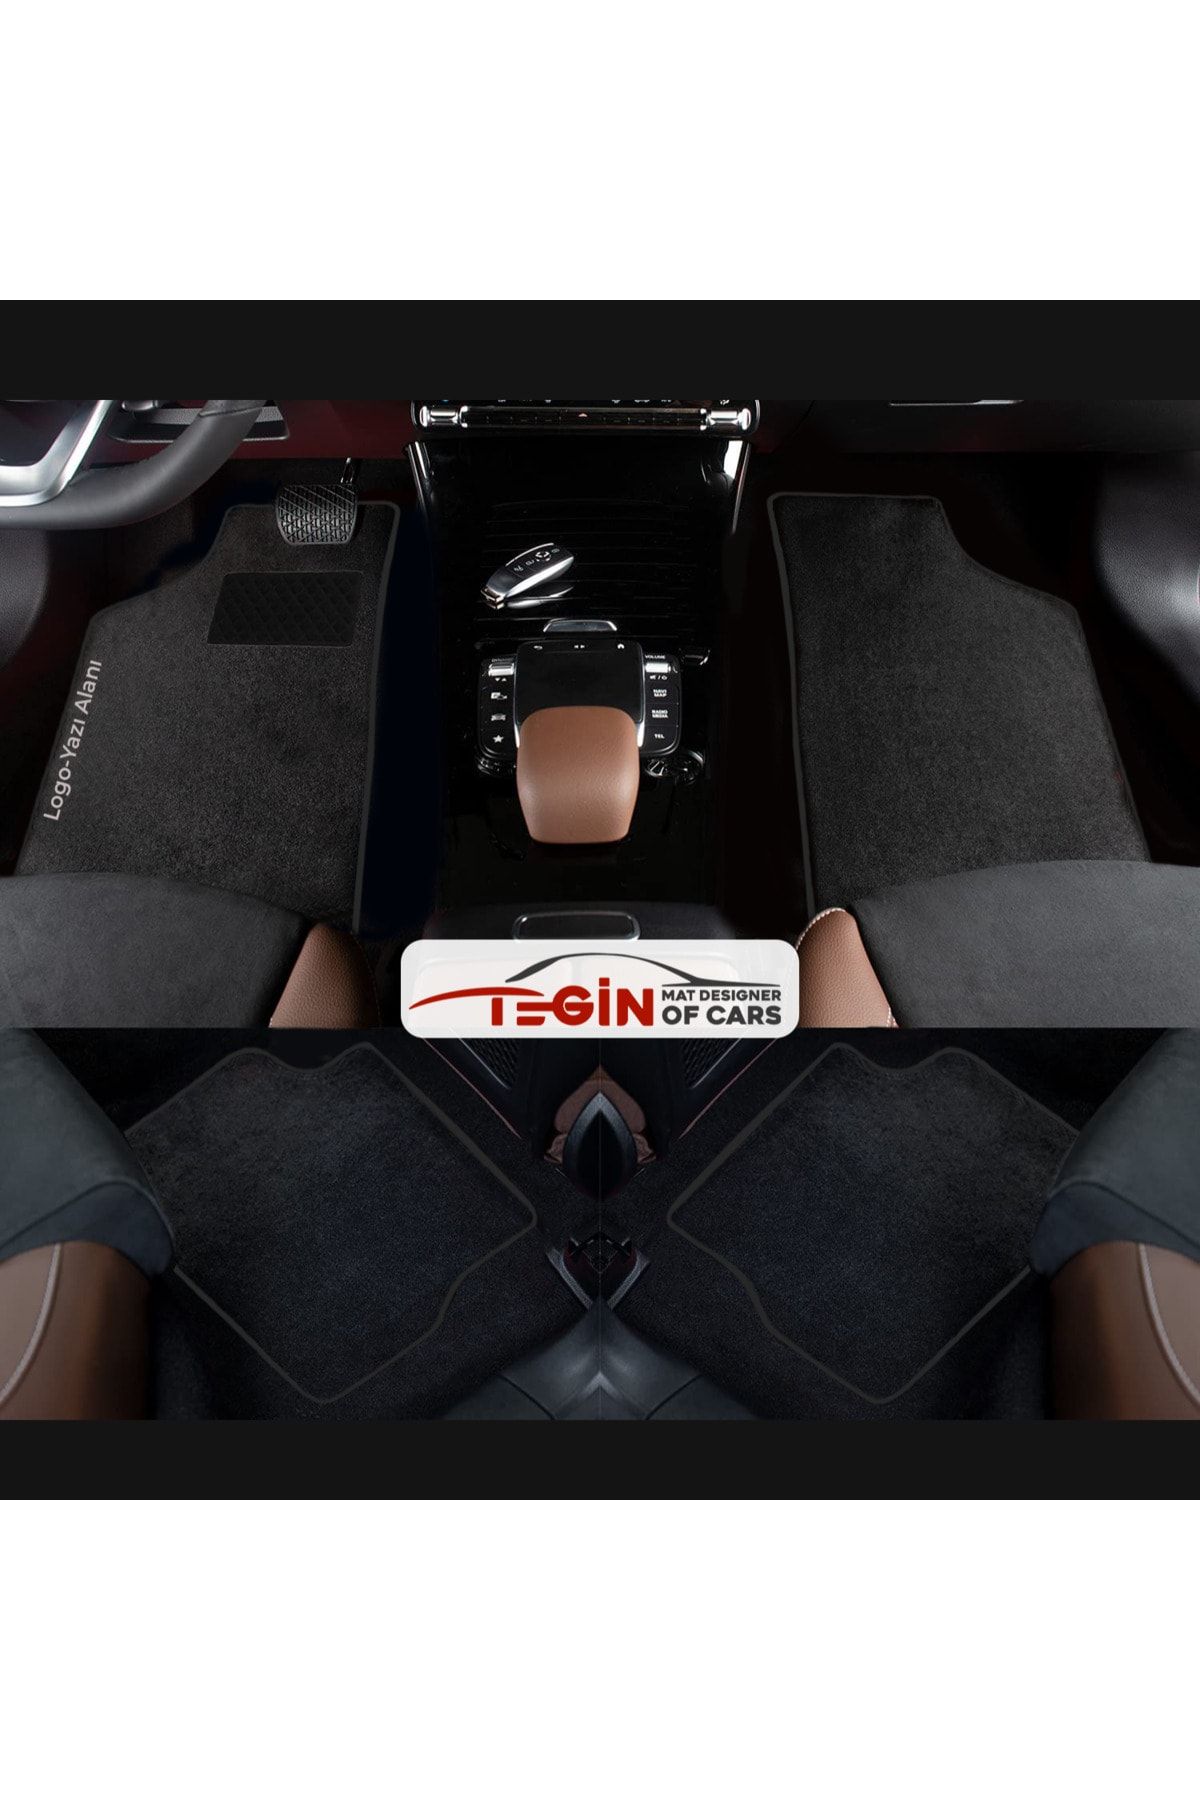 Tegin Mat Designer Of Cars Seat Leon 5f 2013 + Hatchback Aracınıza Özel Prime Siyah Halı Siyah Kenar Halı Paspas